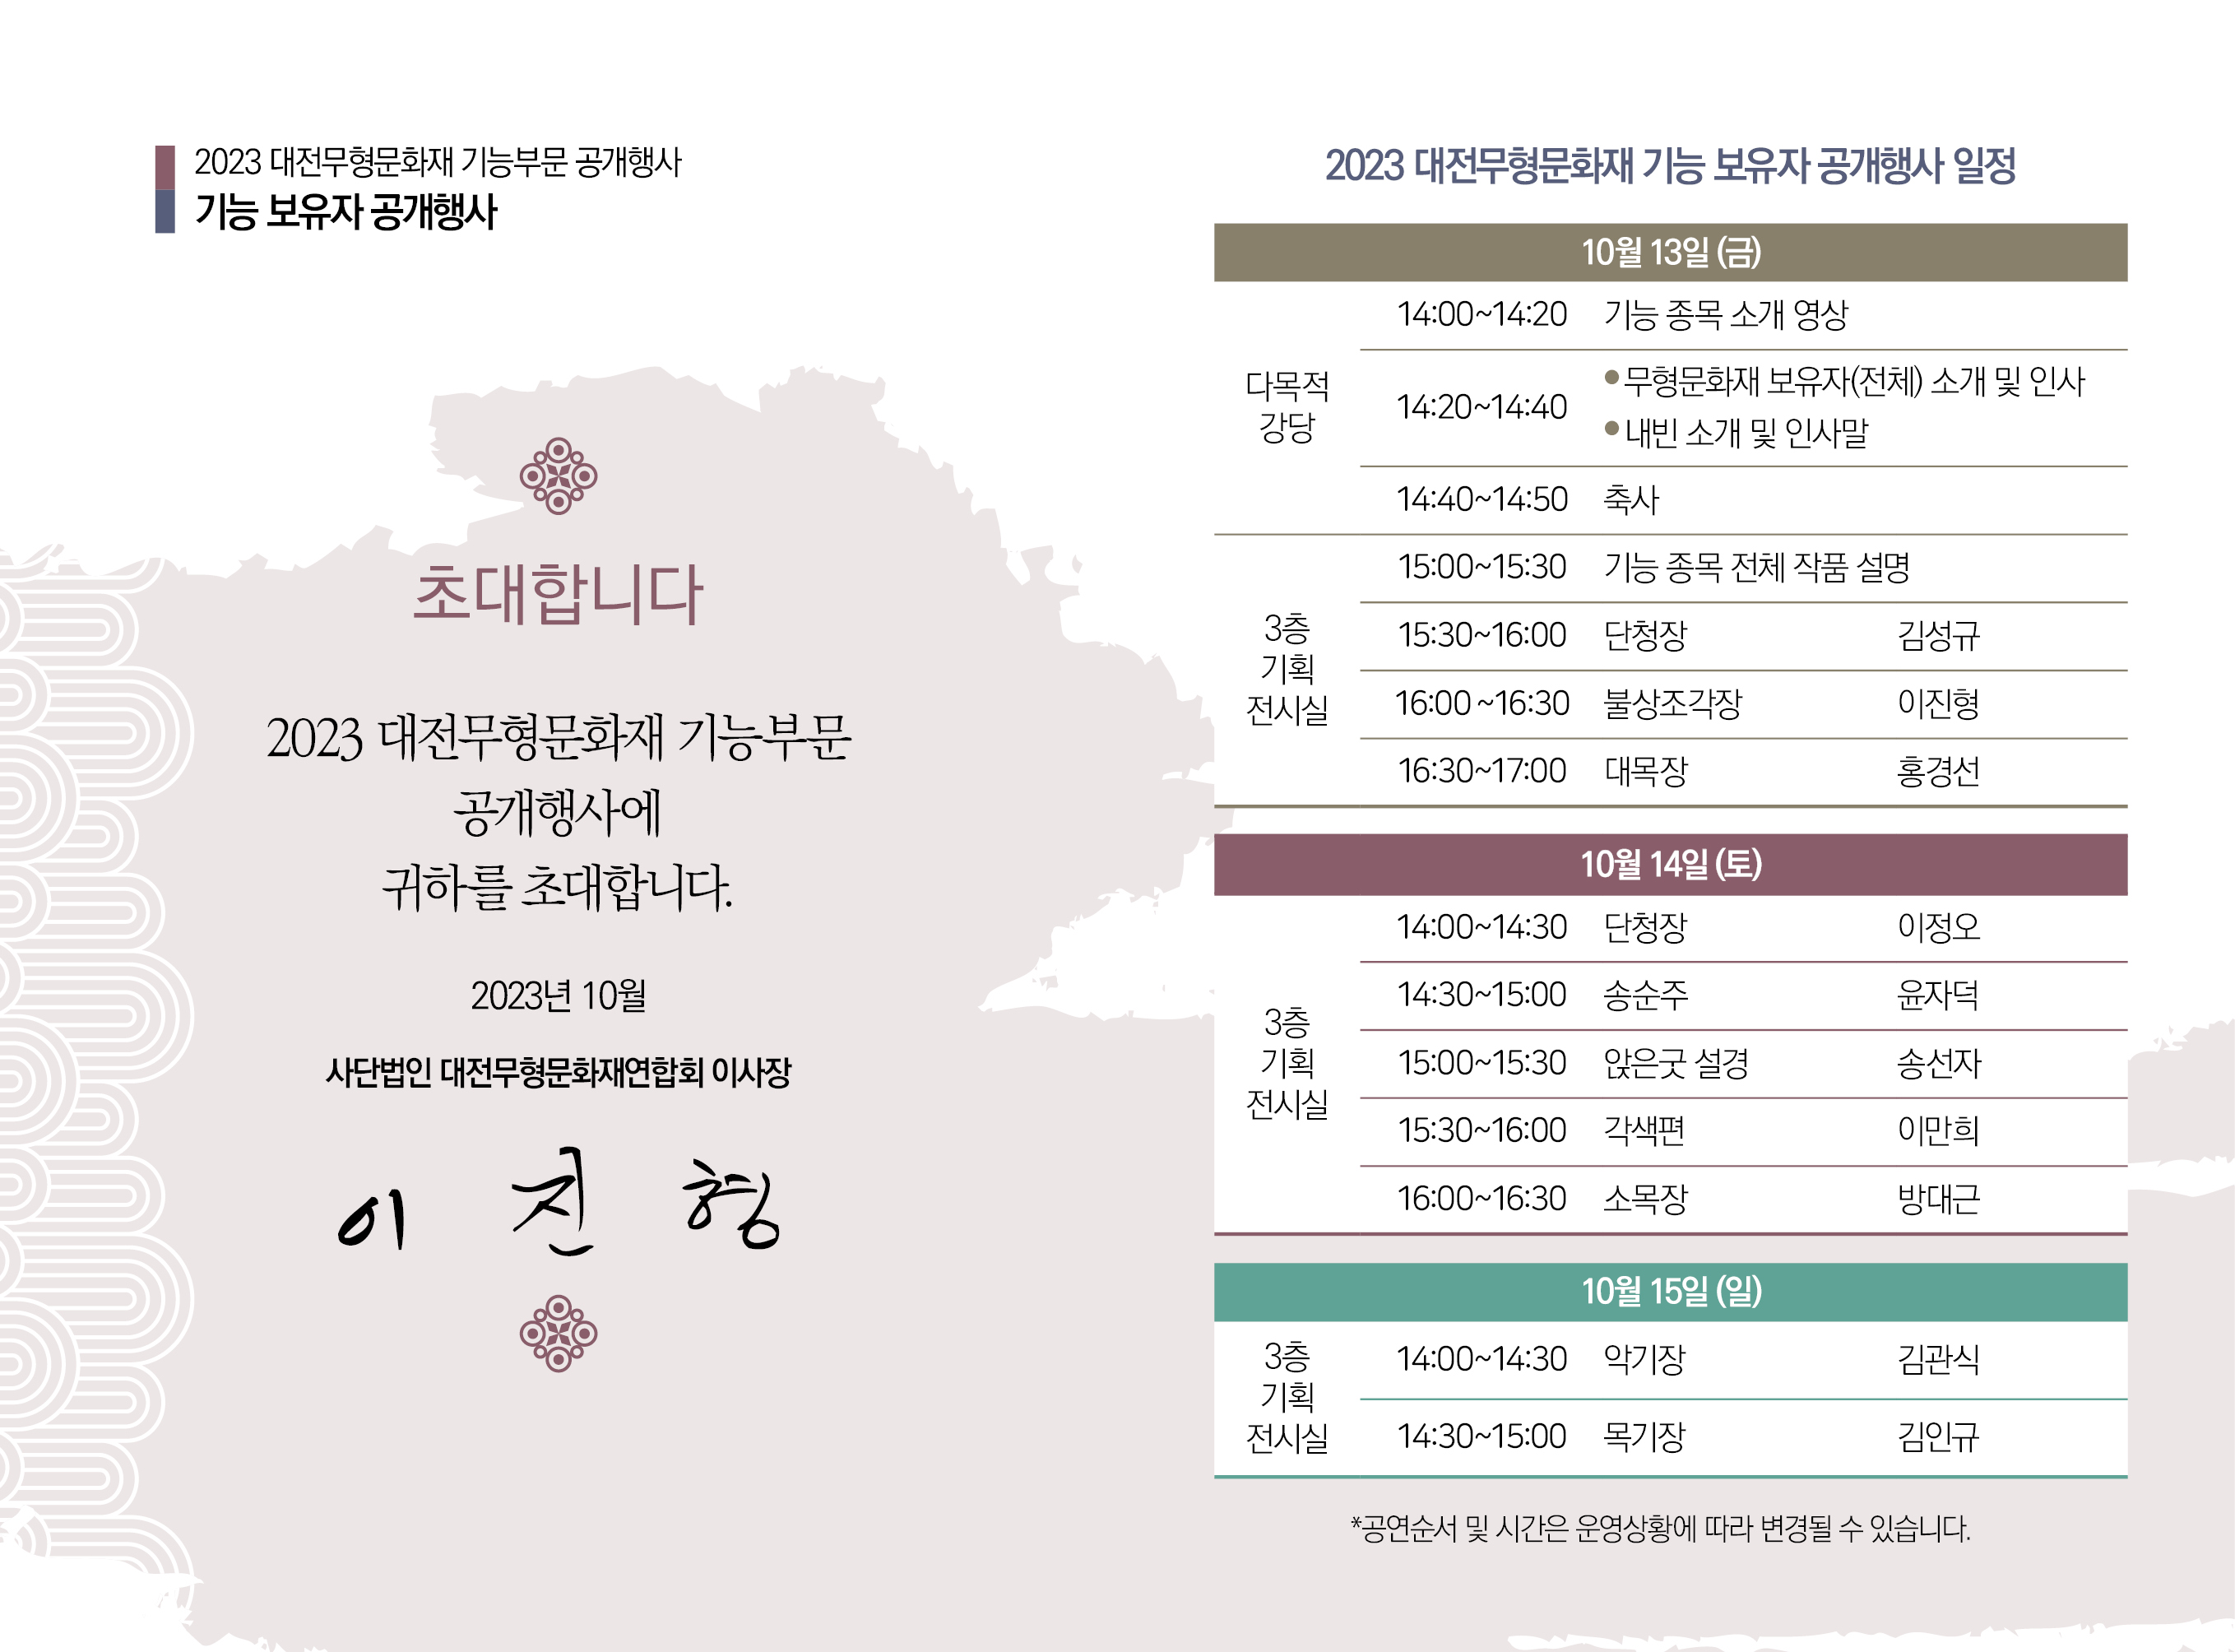 붙임 2. 2023 대전무형문화재 기능 공개행사 일정